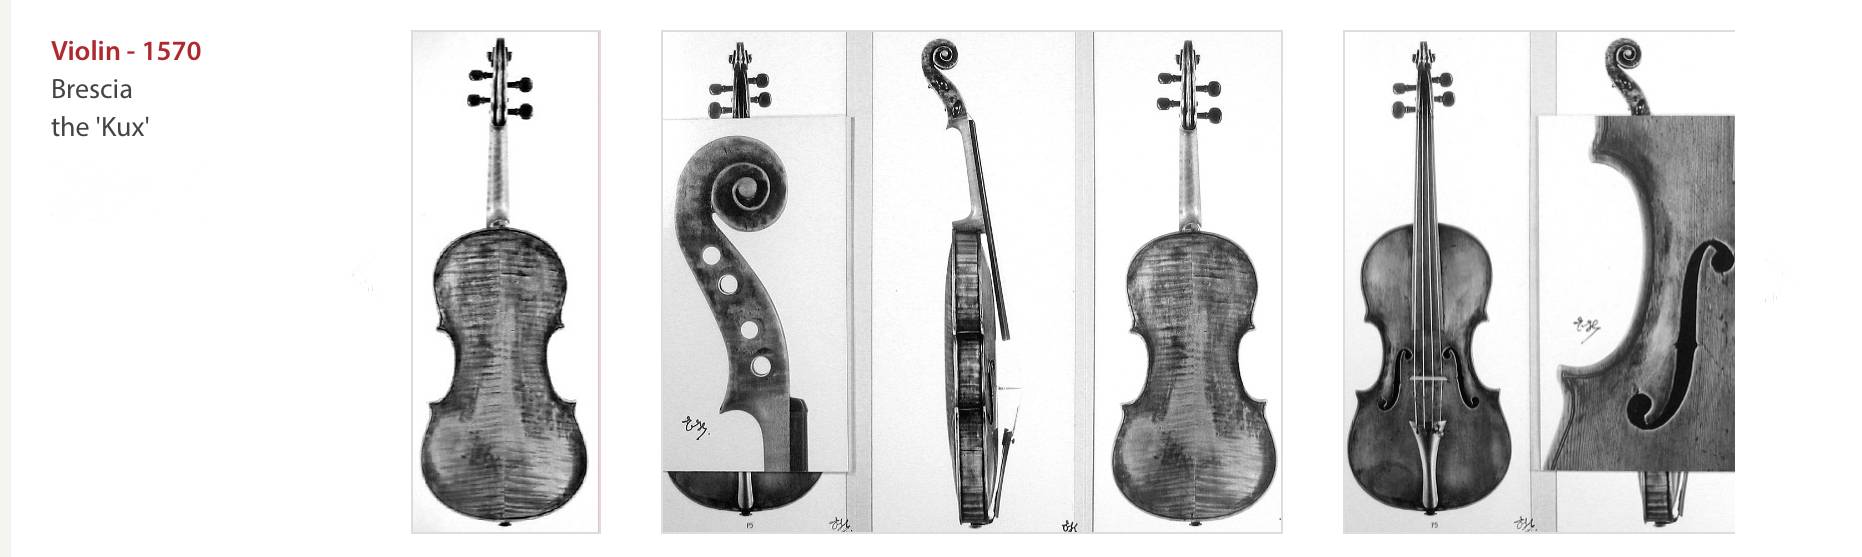 The Brescia violin